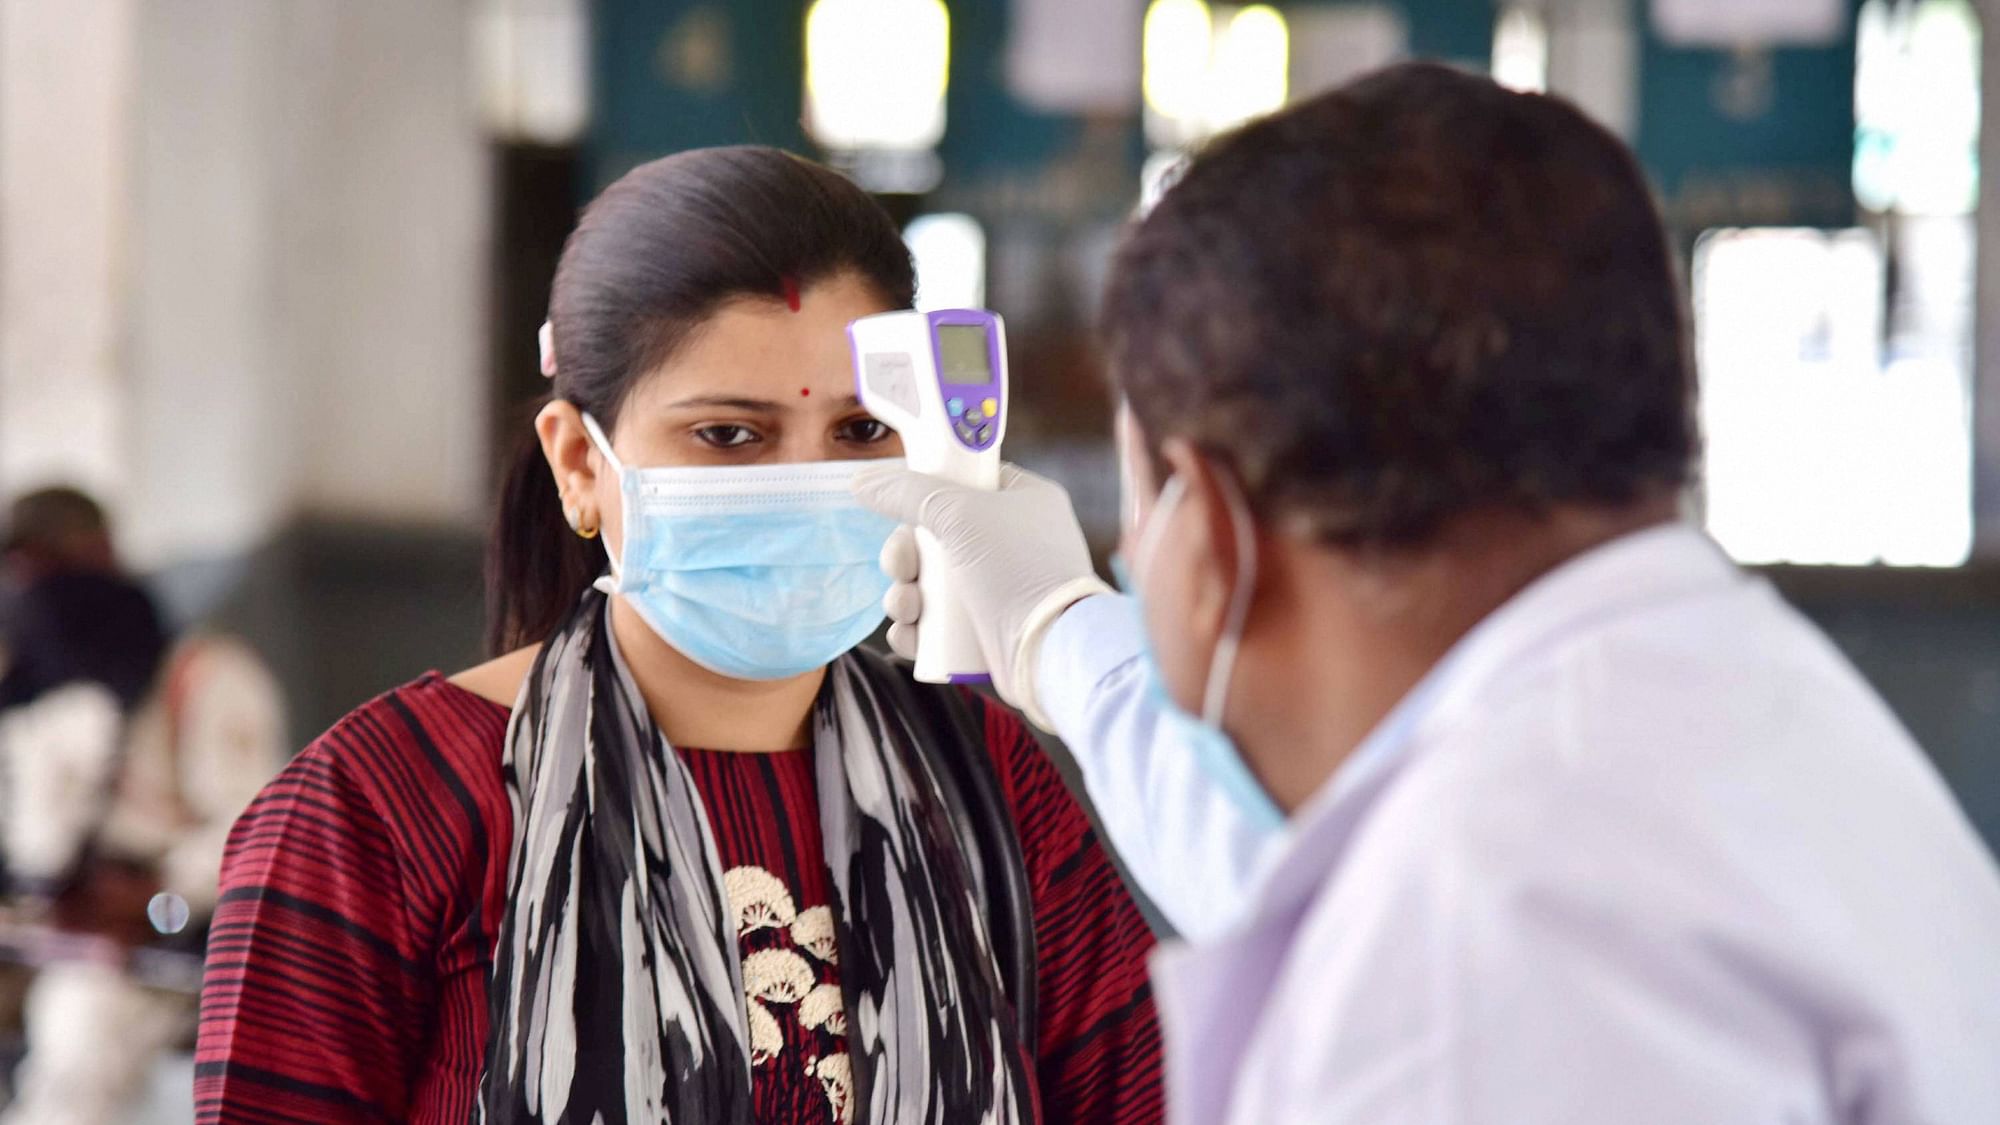 भारत में कोरोना वायरस के मामलों का बढ़ना लगातार जारी है